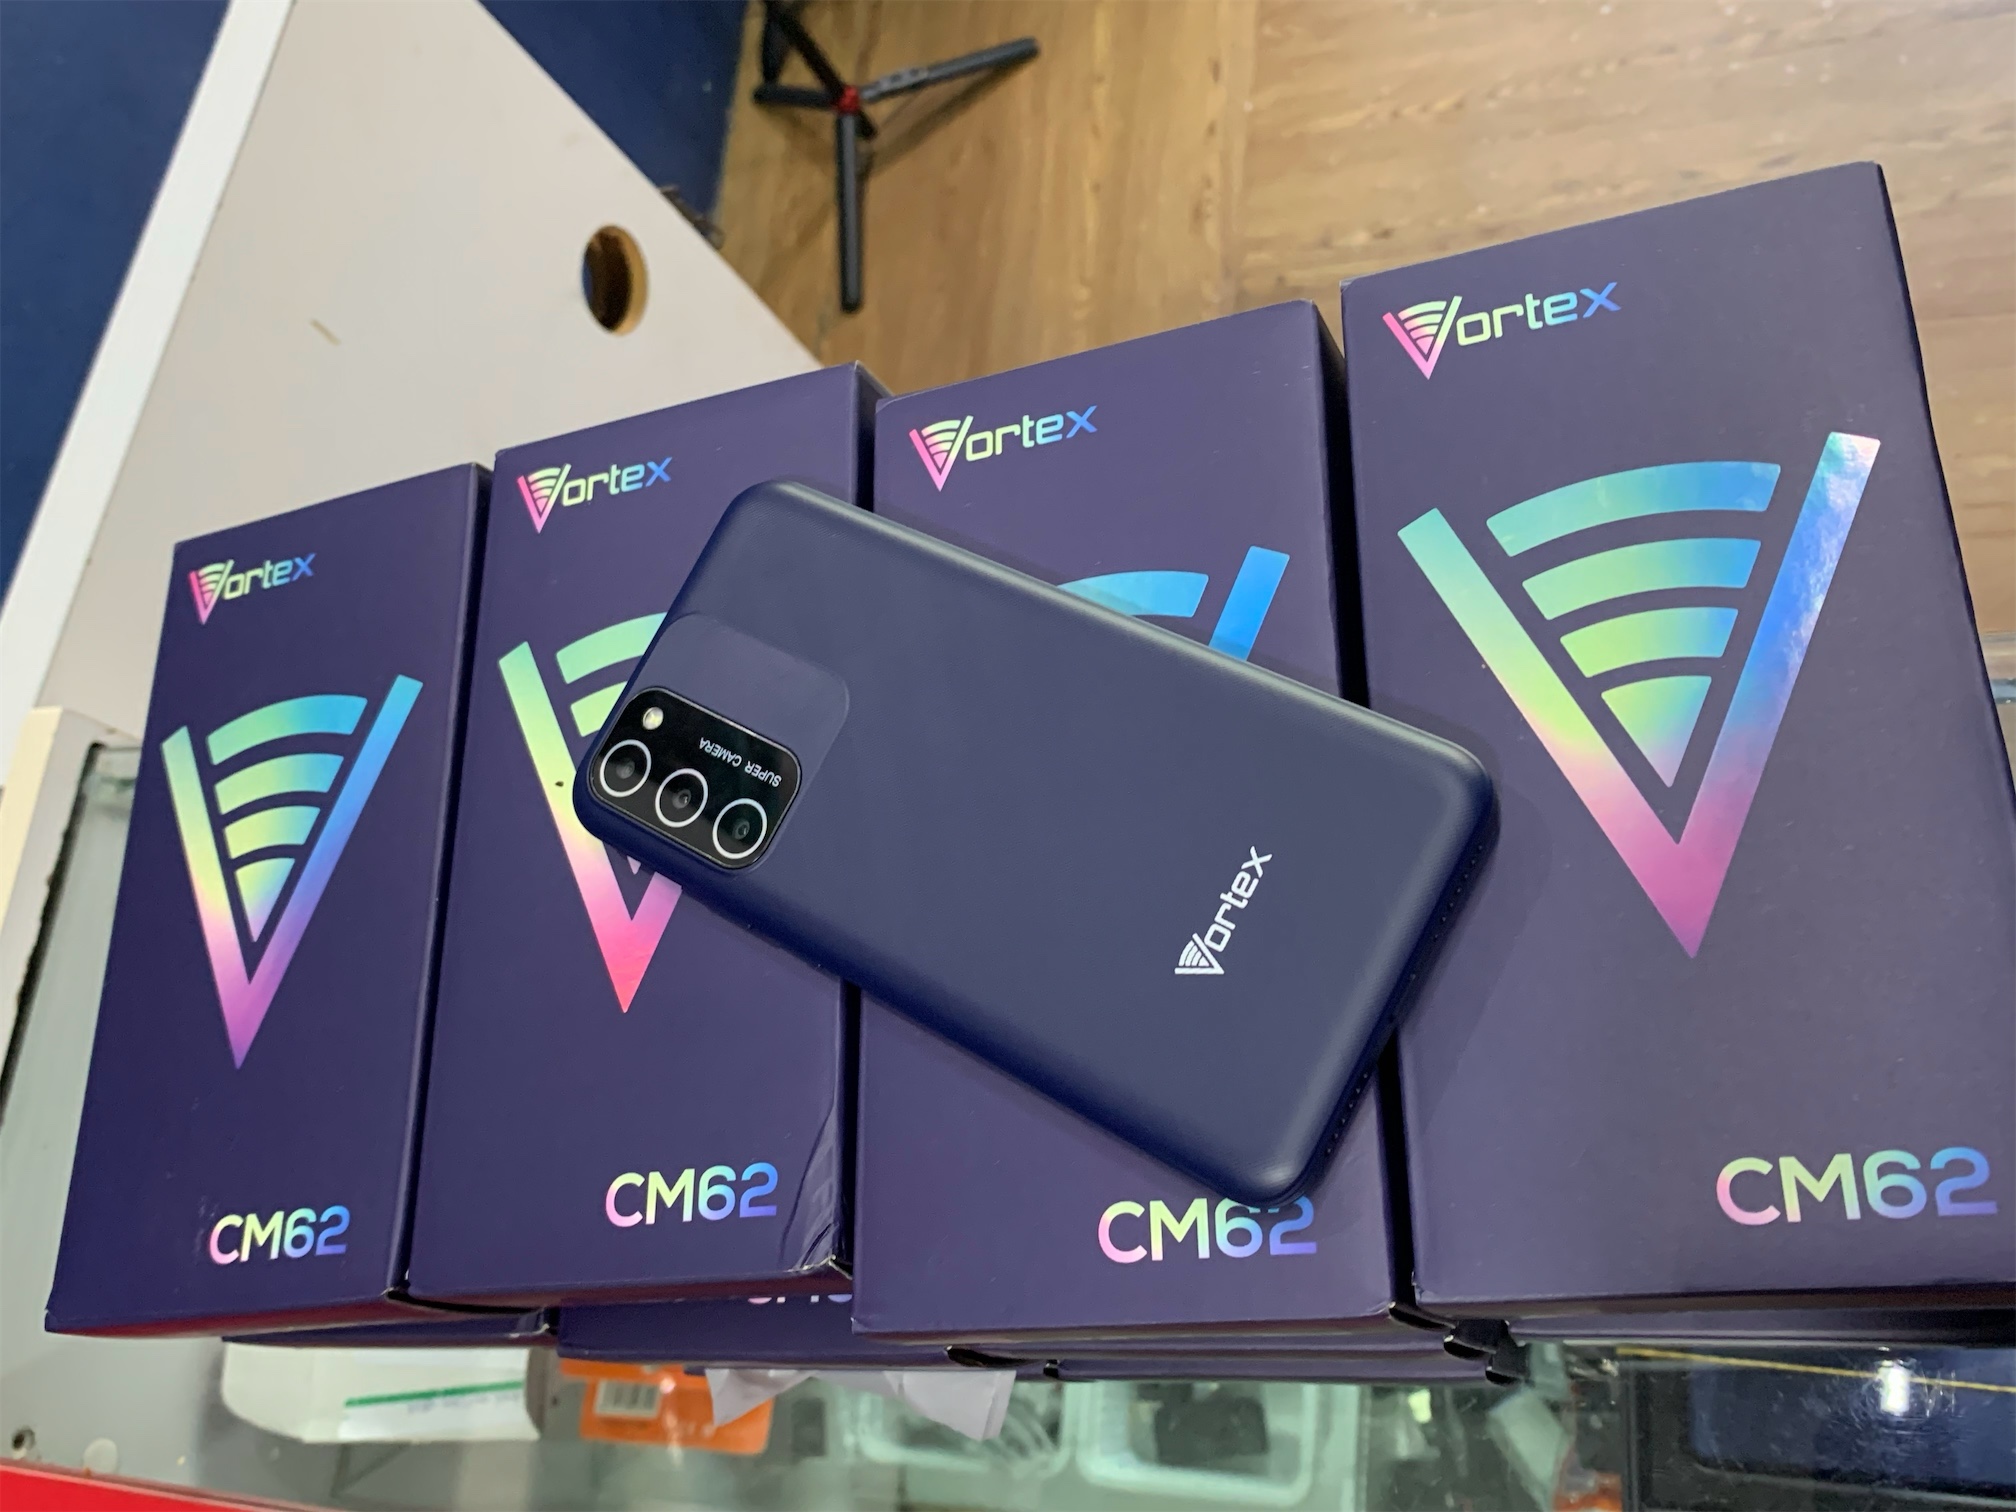 celulares y tabletas - VORTEX CM62 2